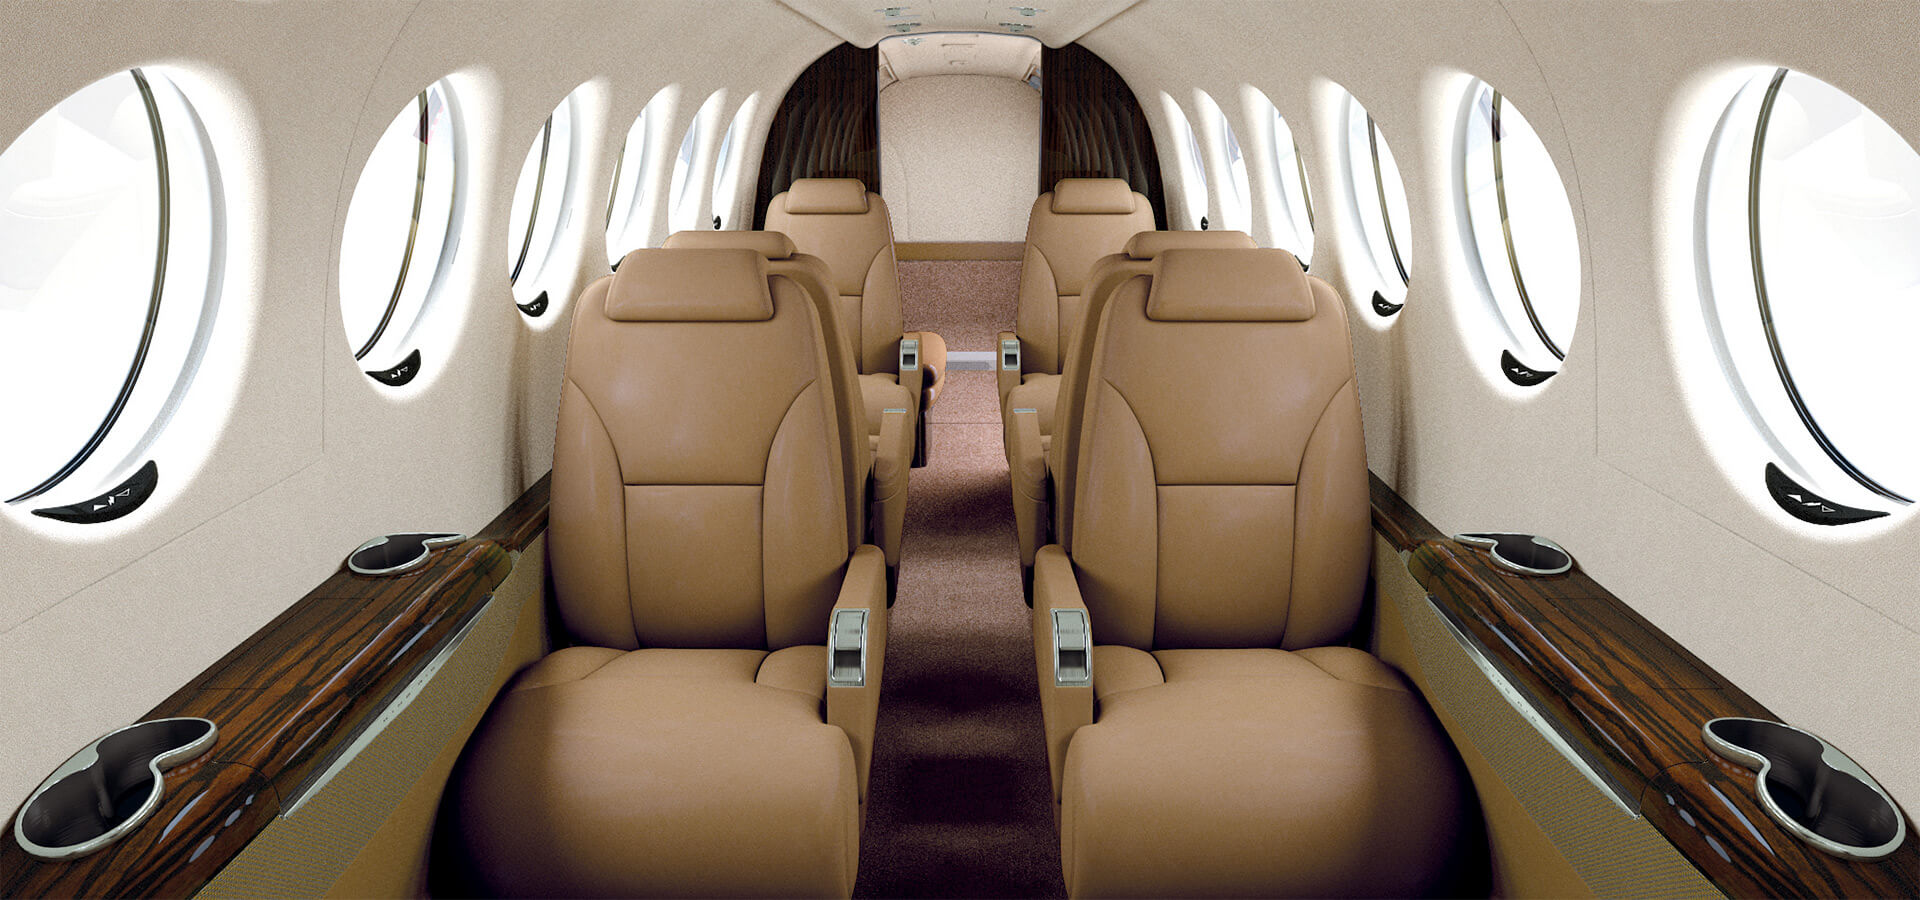 King Air 350i